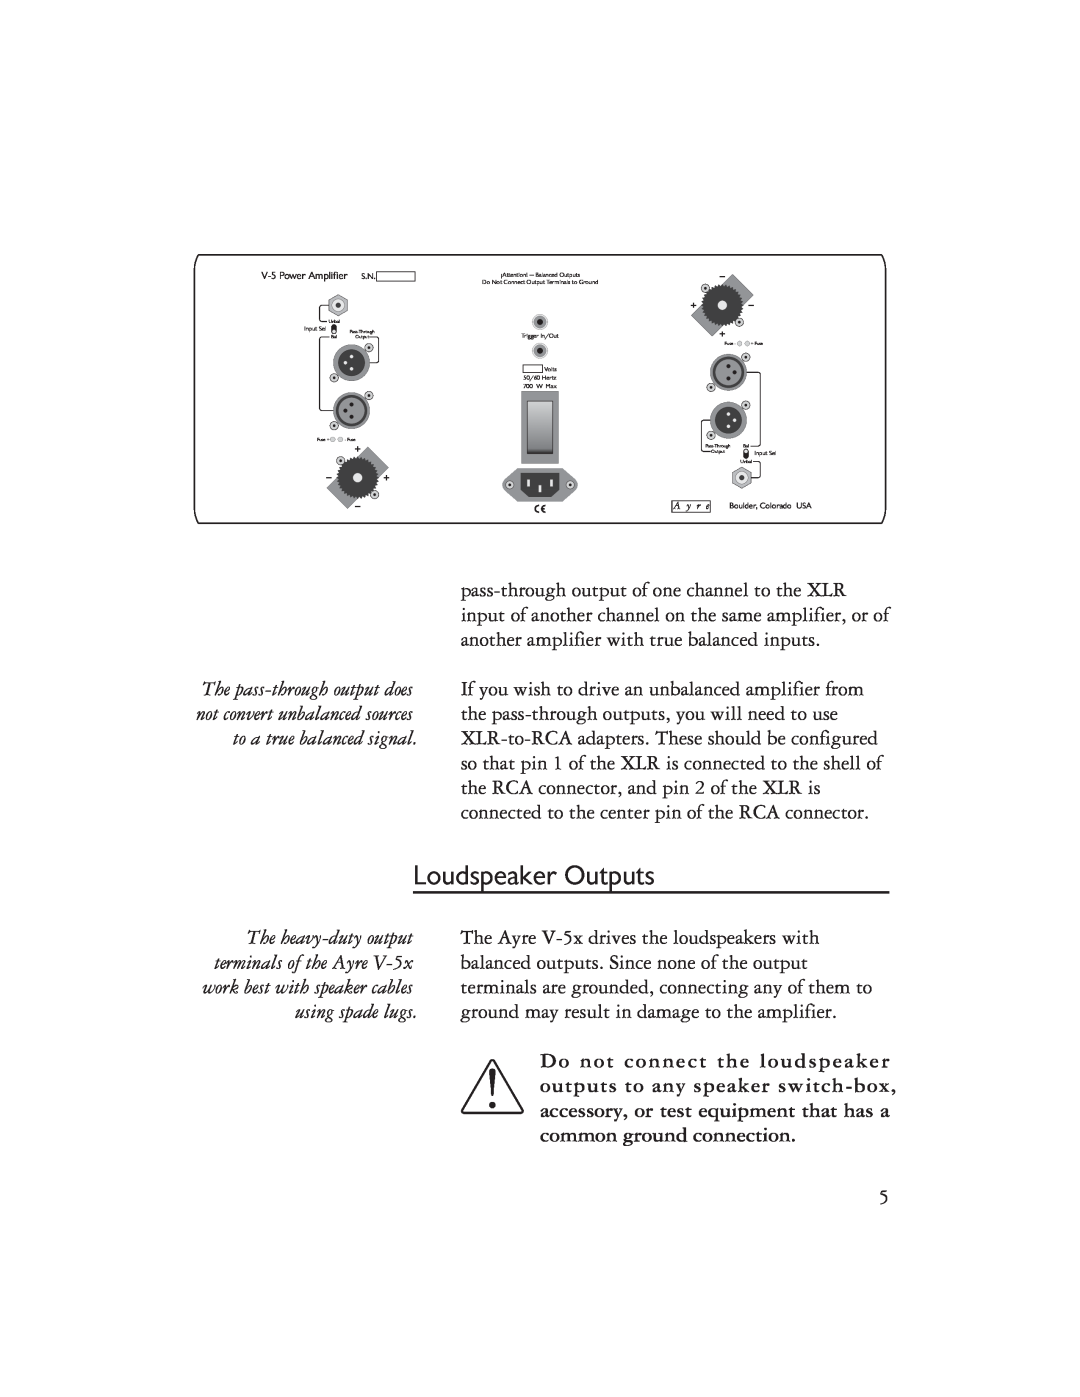 Ayre Acoustics V-5x owner manual Loudspeaker Outputs 